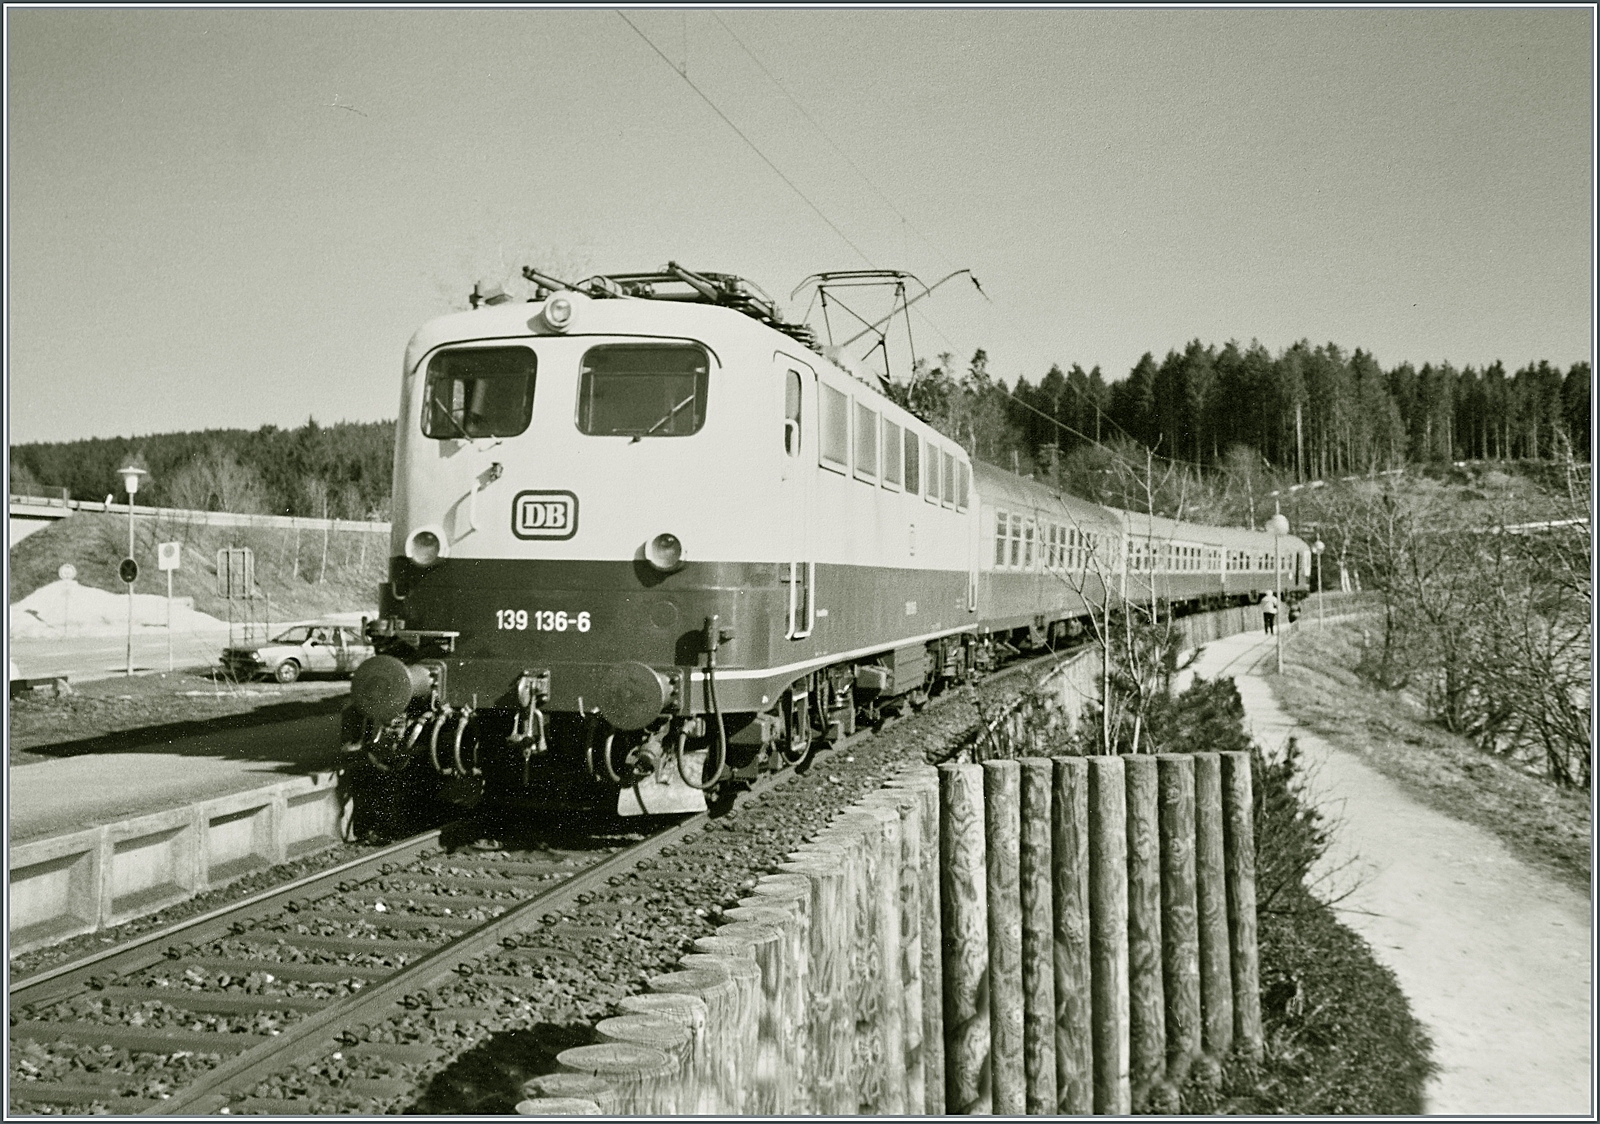 Als S/W Version: Die DB 139 136-6 erreicht mit ihrem Nahverkehrszug auf dem Weg von Seebrugg nach Freiburg i.B. den Halt Schluchsee.

Analogbild vom April 1988 